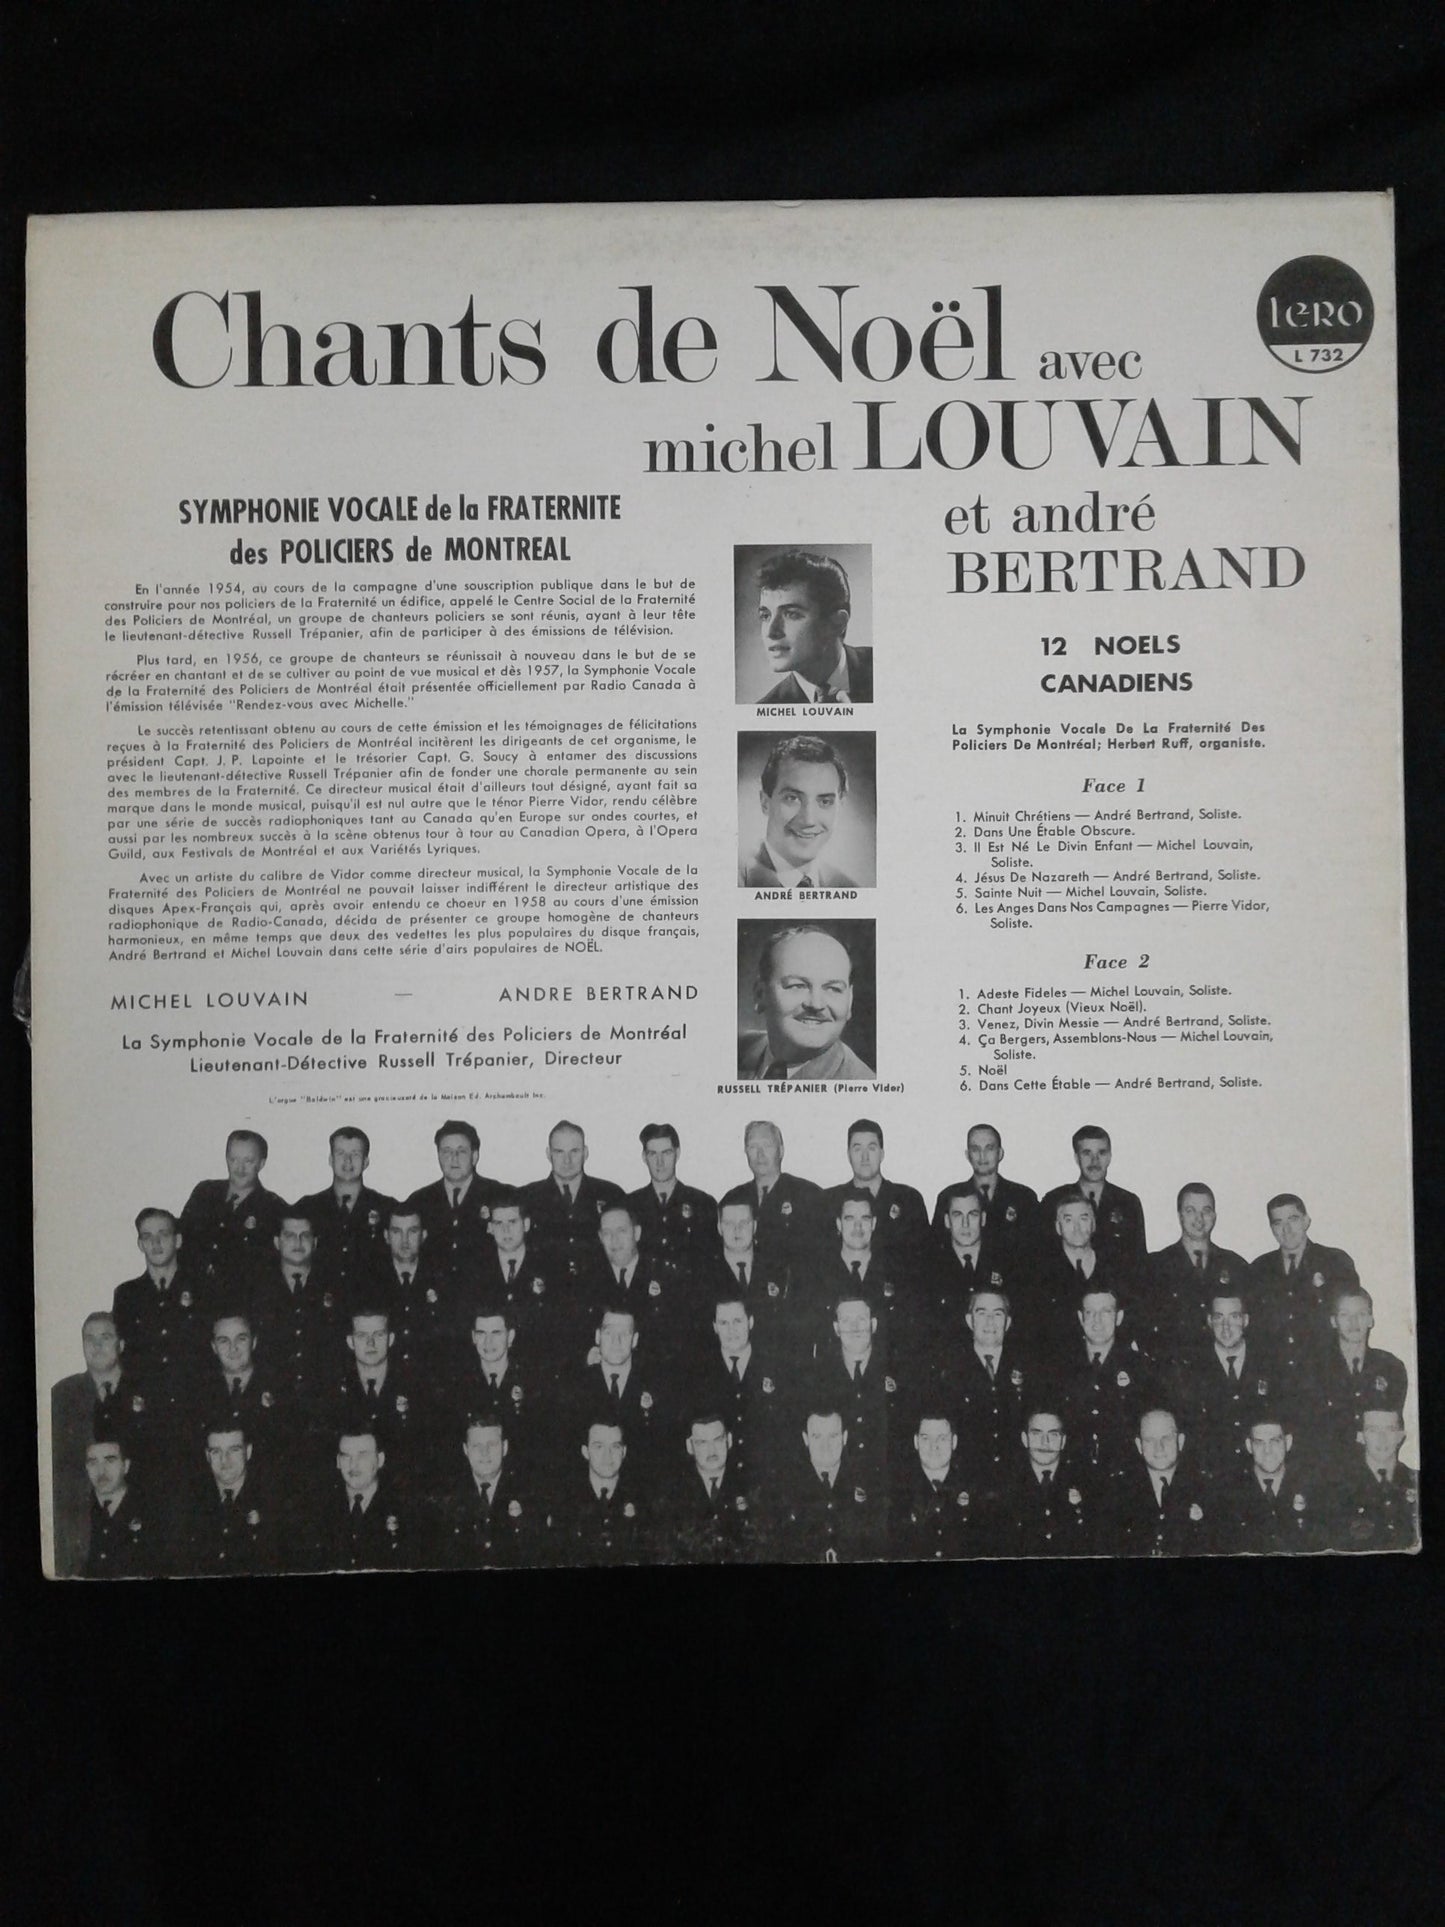 Vinyle Chants de Noël Michel Louvain et André Bertrand